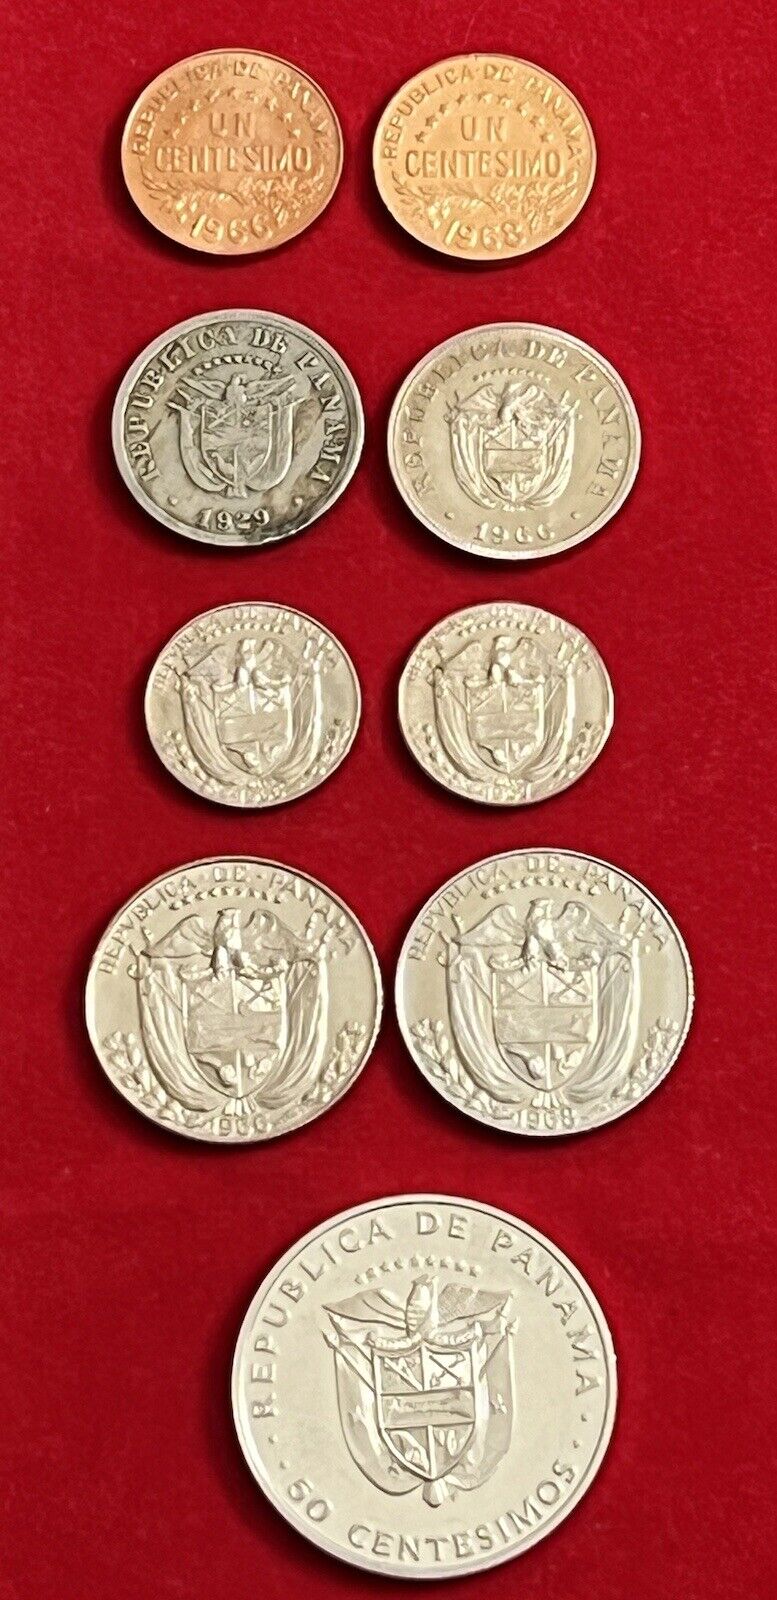 Lot of 9 Republica de Panama Coins 1929-1975 VF-Uncirculated